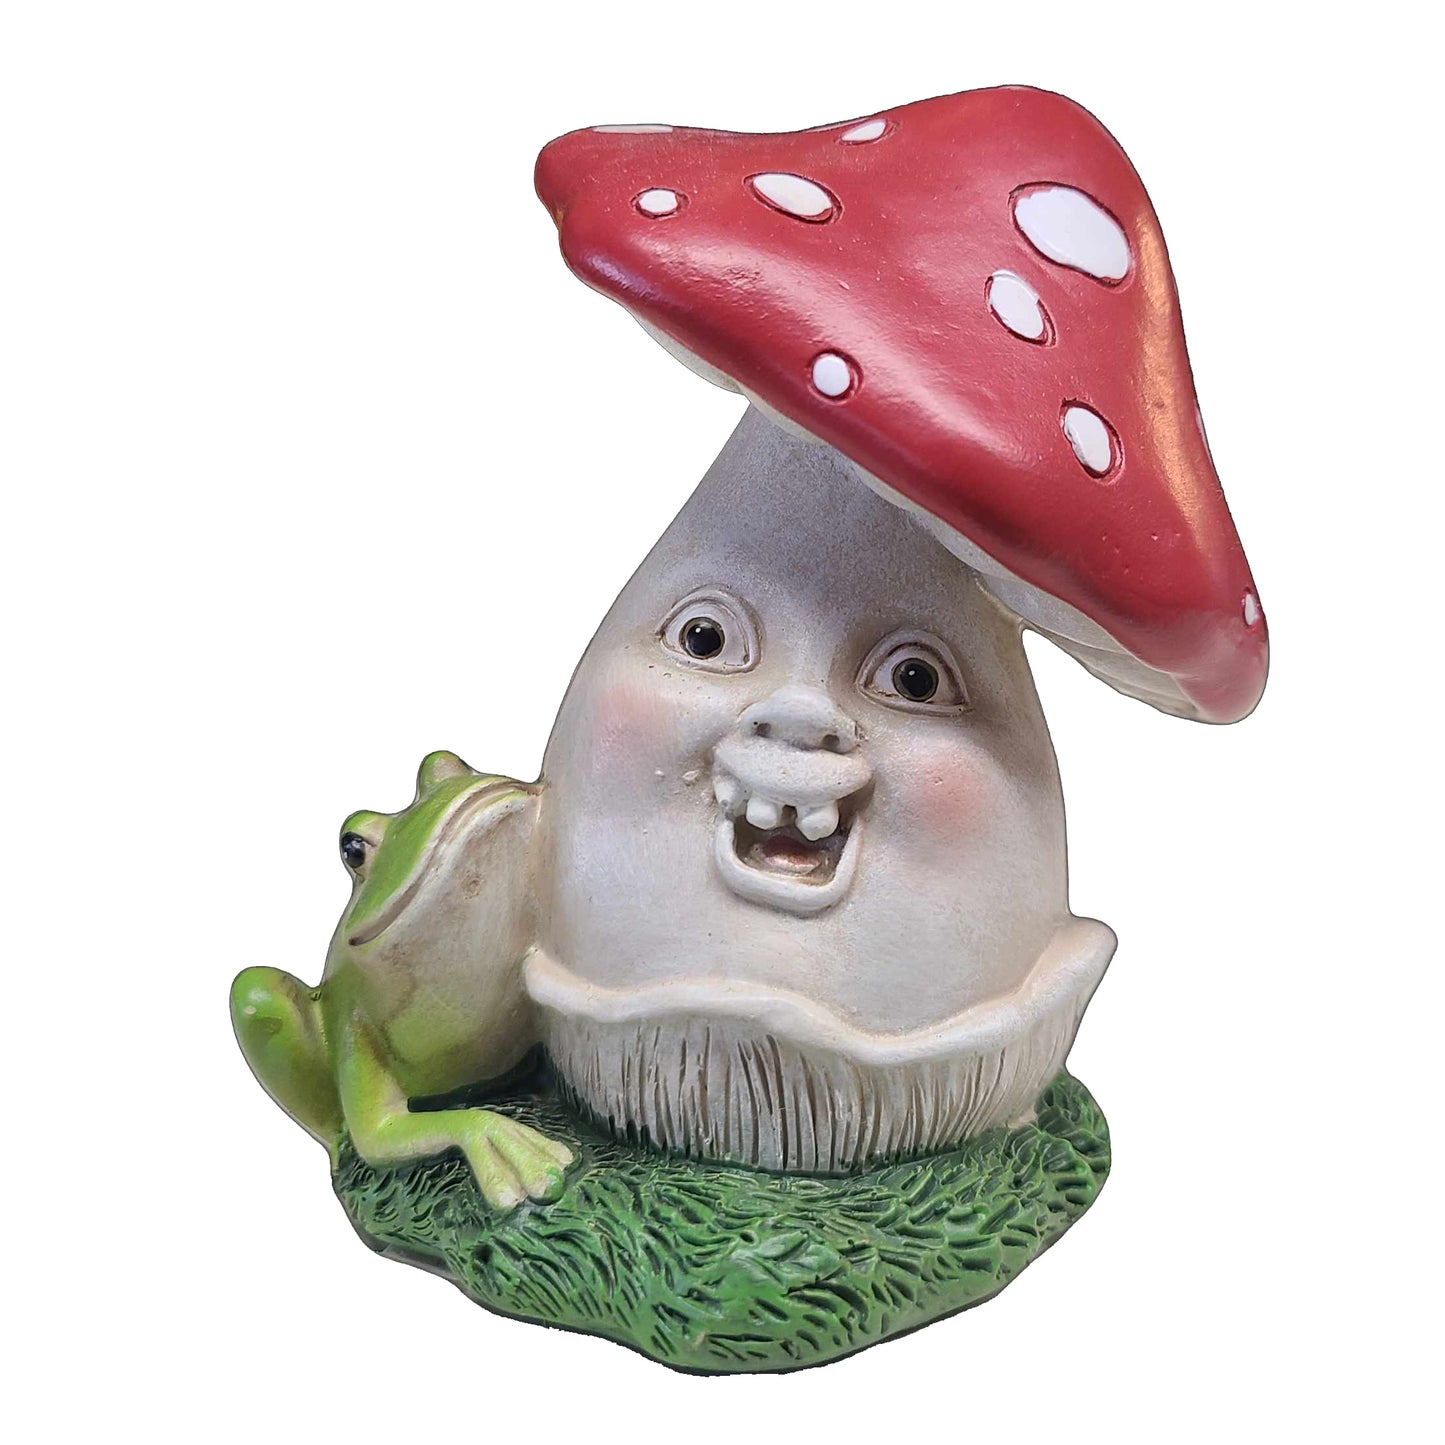 Happy Mushroom Figurines